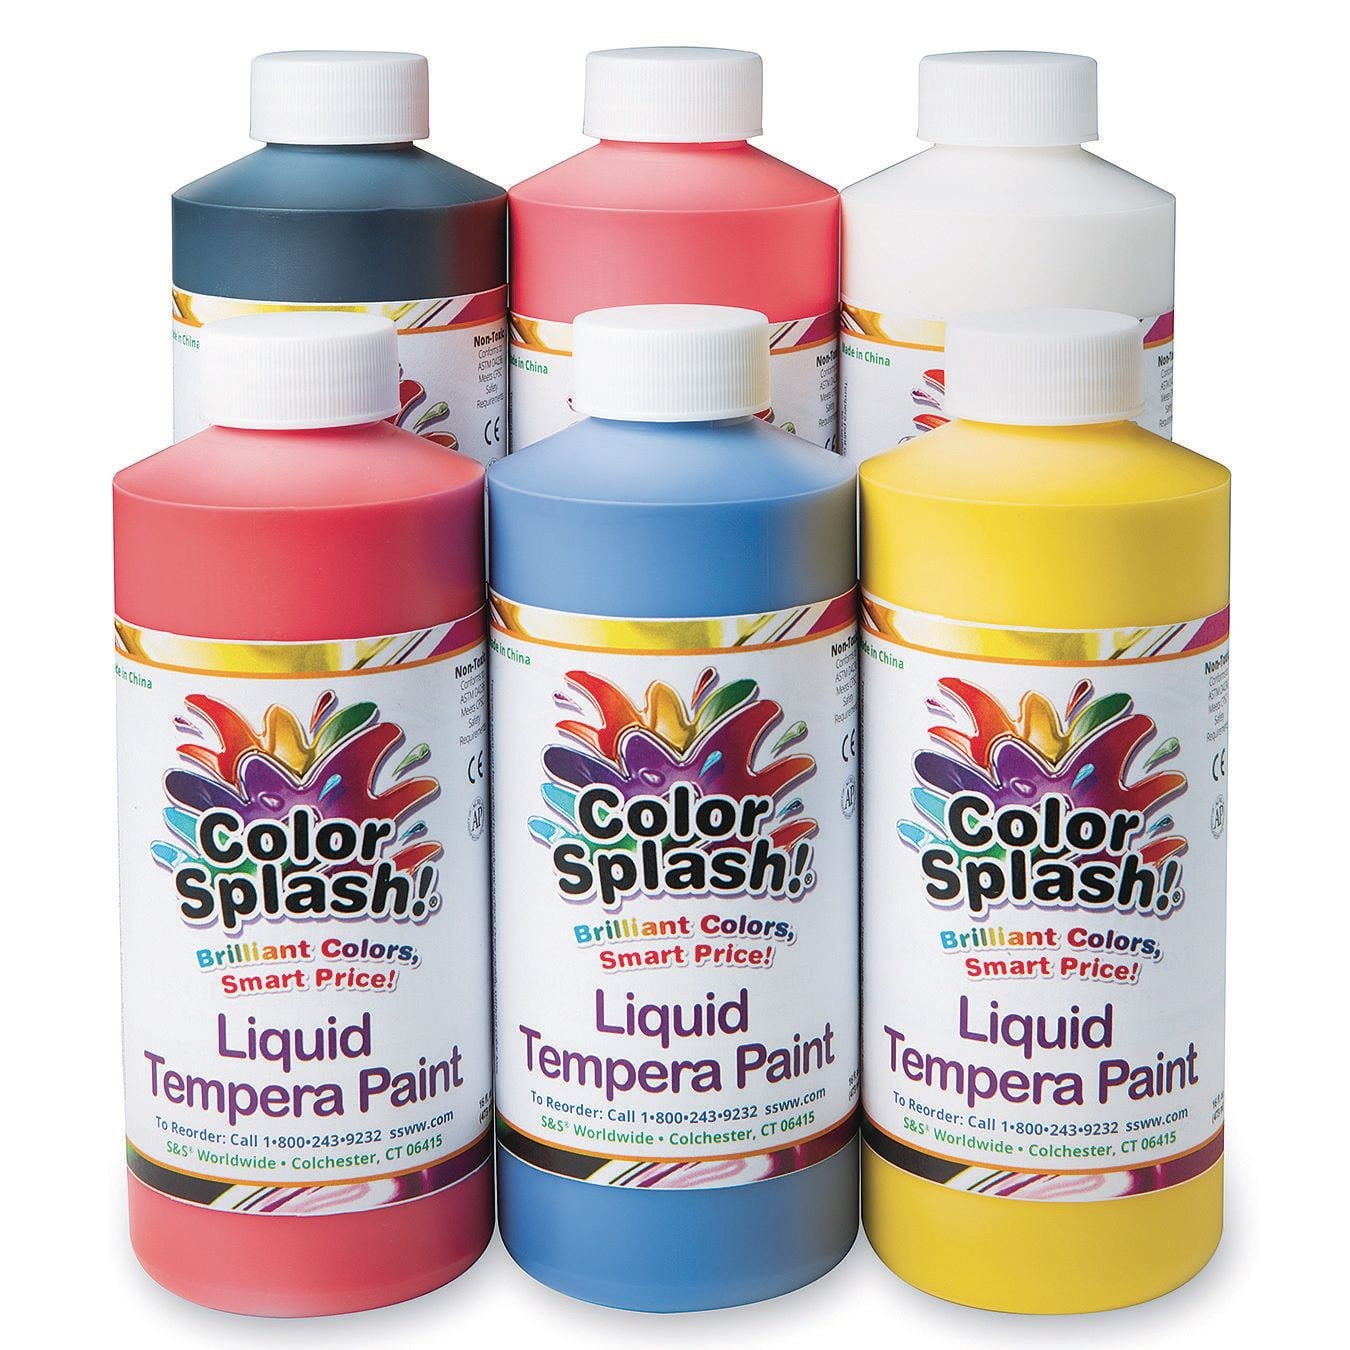 Cra-Z-Art Washable Poster Paint Bulk, Assorted Colors 16oz each bottle, 6  count